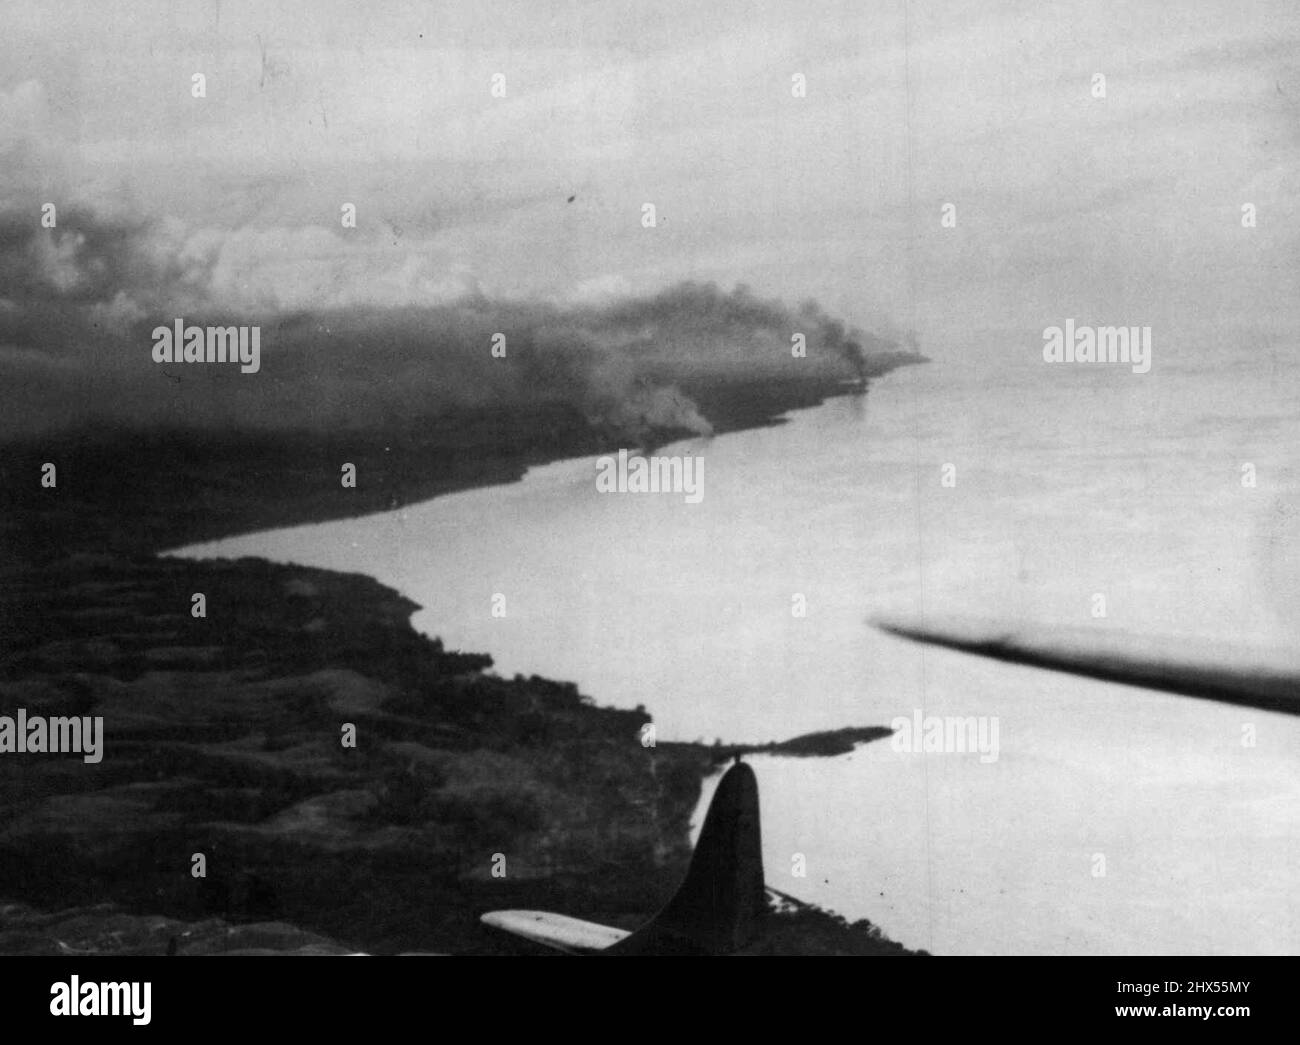 Japanisches Schiff brannte in GuadalcanalVe Rauchwolken, die am Horizont in der Nähe der Inselspitze im Hintergrund kaum zu erkennen sind, entstanden aus ebenso vielen japanischen Frachtschiffen, die U.S.froces in der Schlacht von Guadalcanal zerstört wurden. Die Schiffe wurden gefunden, um eine Tassafaronga, etwa 7 1/2 Meilen westlich von den US-Positionen ein Guadalcanal 15. November 1942. Und wurden durch Bomben, Artillerie-und Marinegewehrfeuer zerstört Zusätzlich verlor der Feind II Kriegsschiffe, darunter ein Schlachtschiff, und acht Transport-und ***** Schäden an anderen Kriegsschiffen. Amerikanische Verluste in der Schlacht waren zwei leichte Kreuzer A Stockfoto